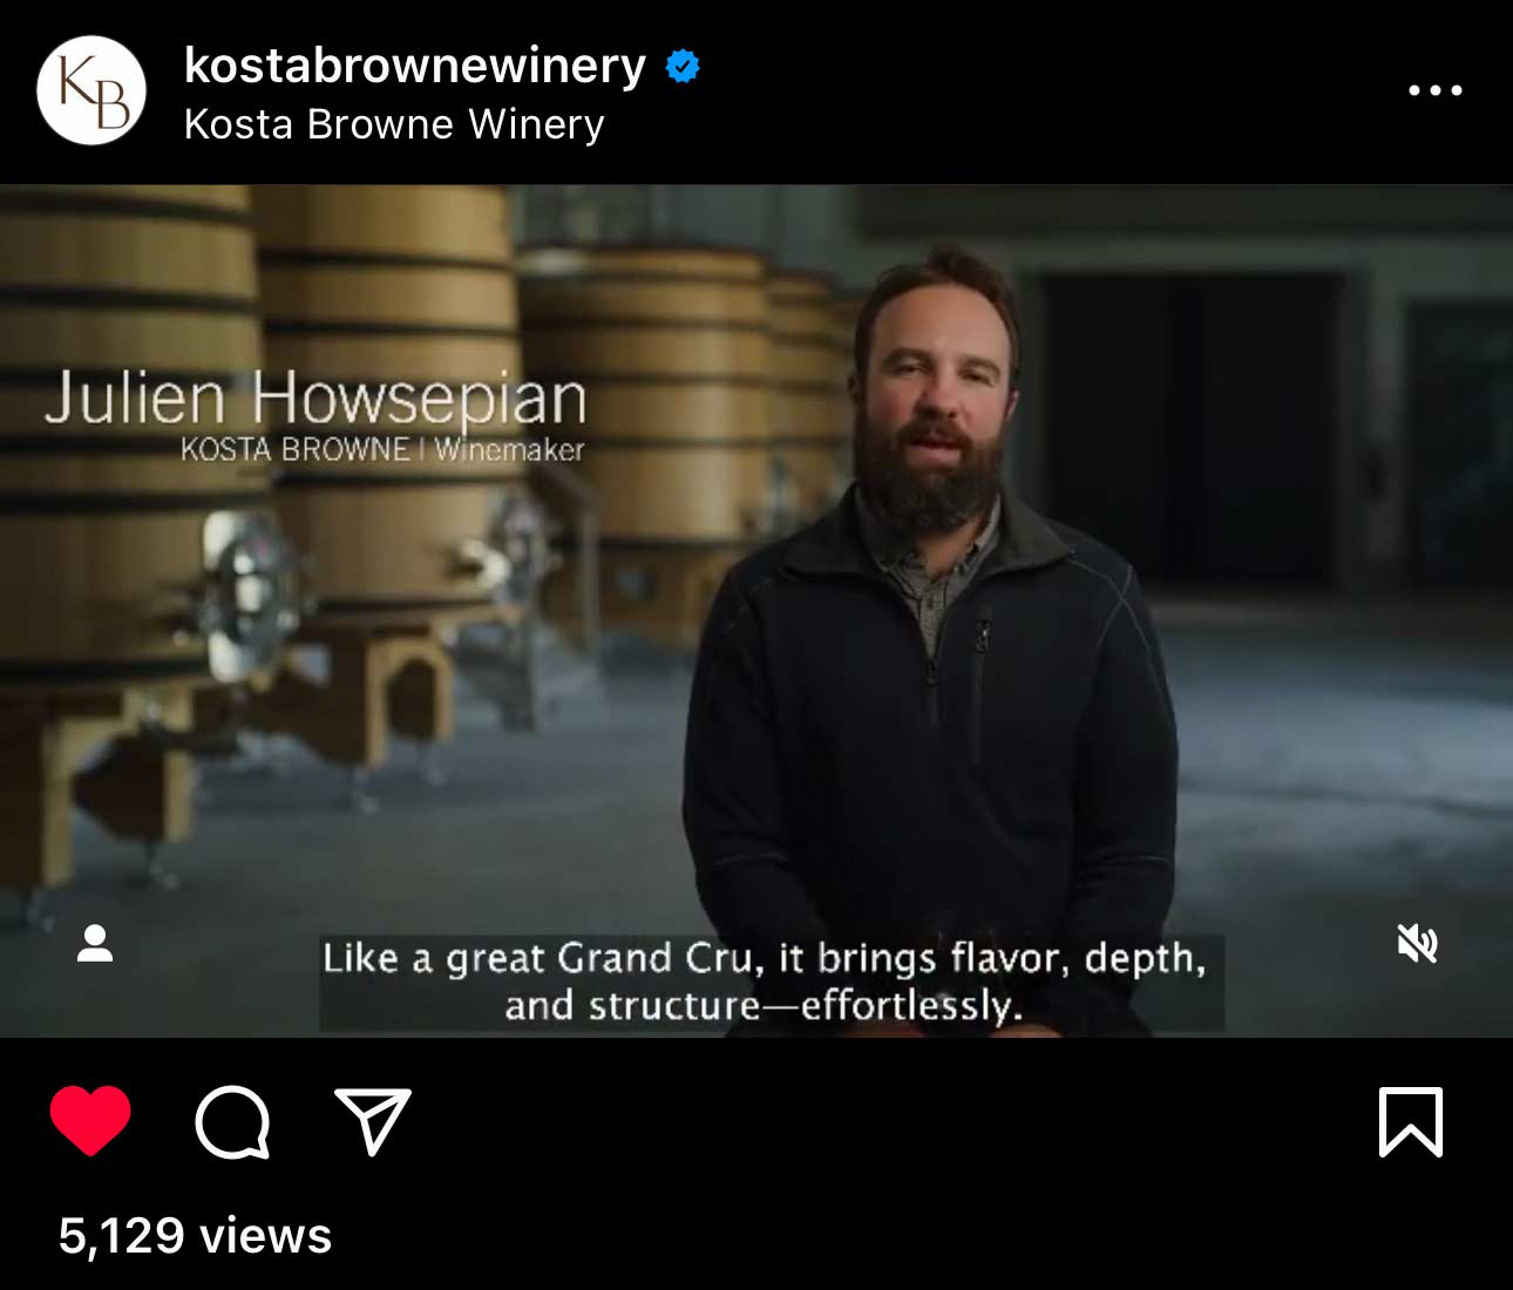 Winemaker Julien Howsepian describes Kosta Browne